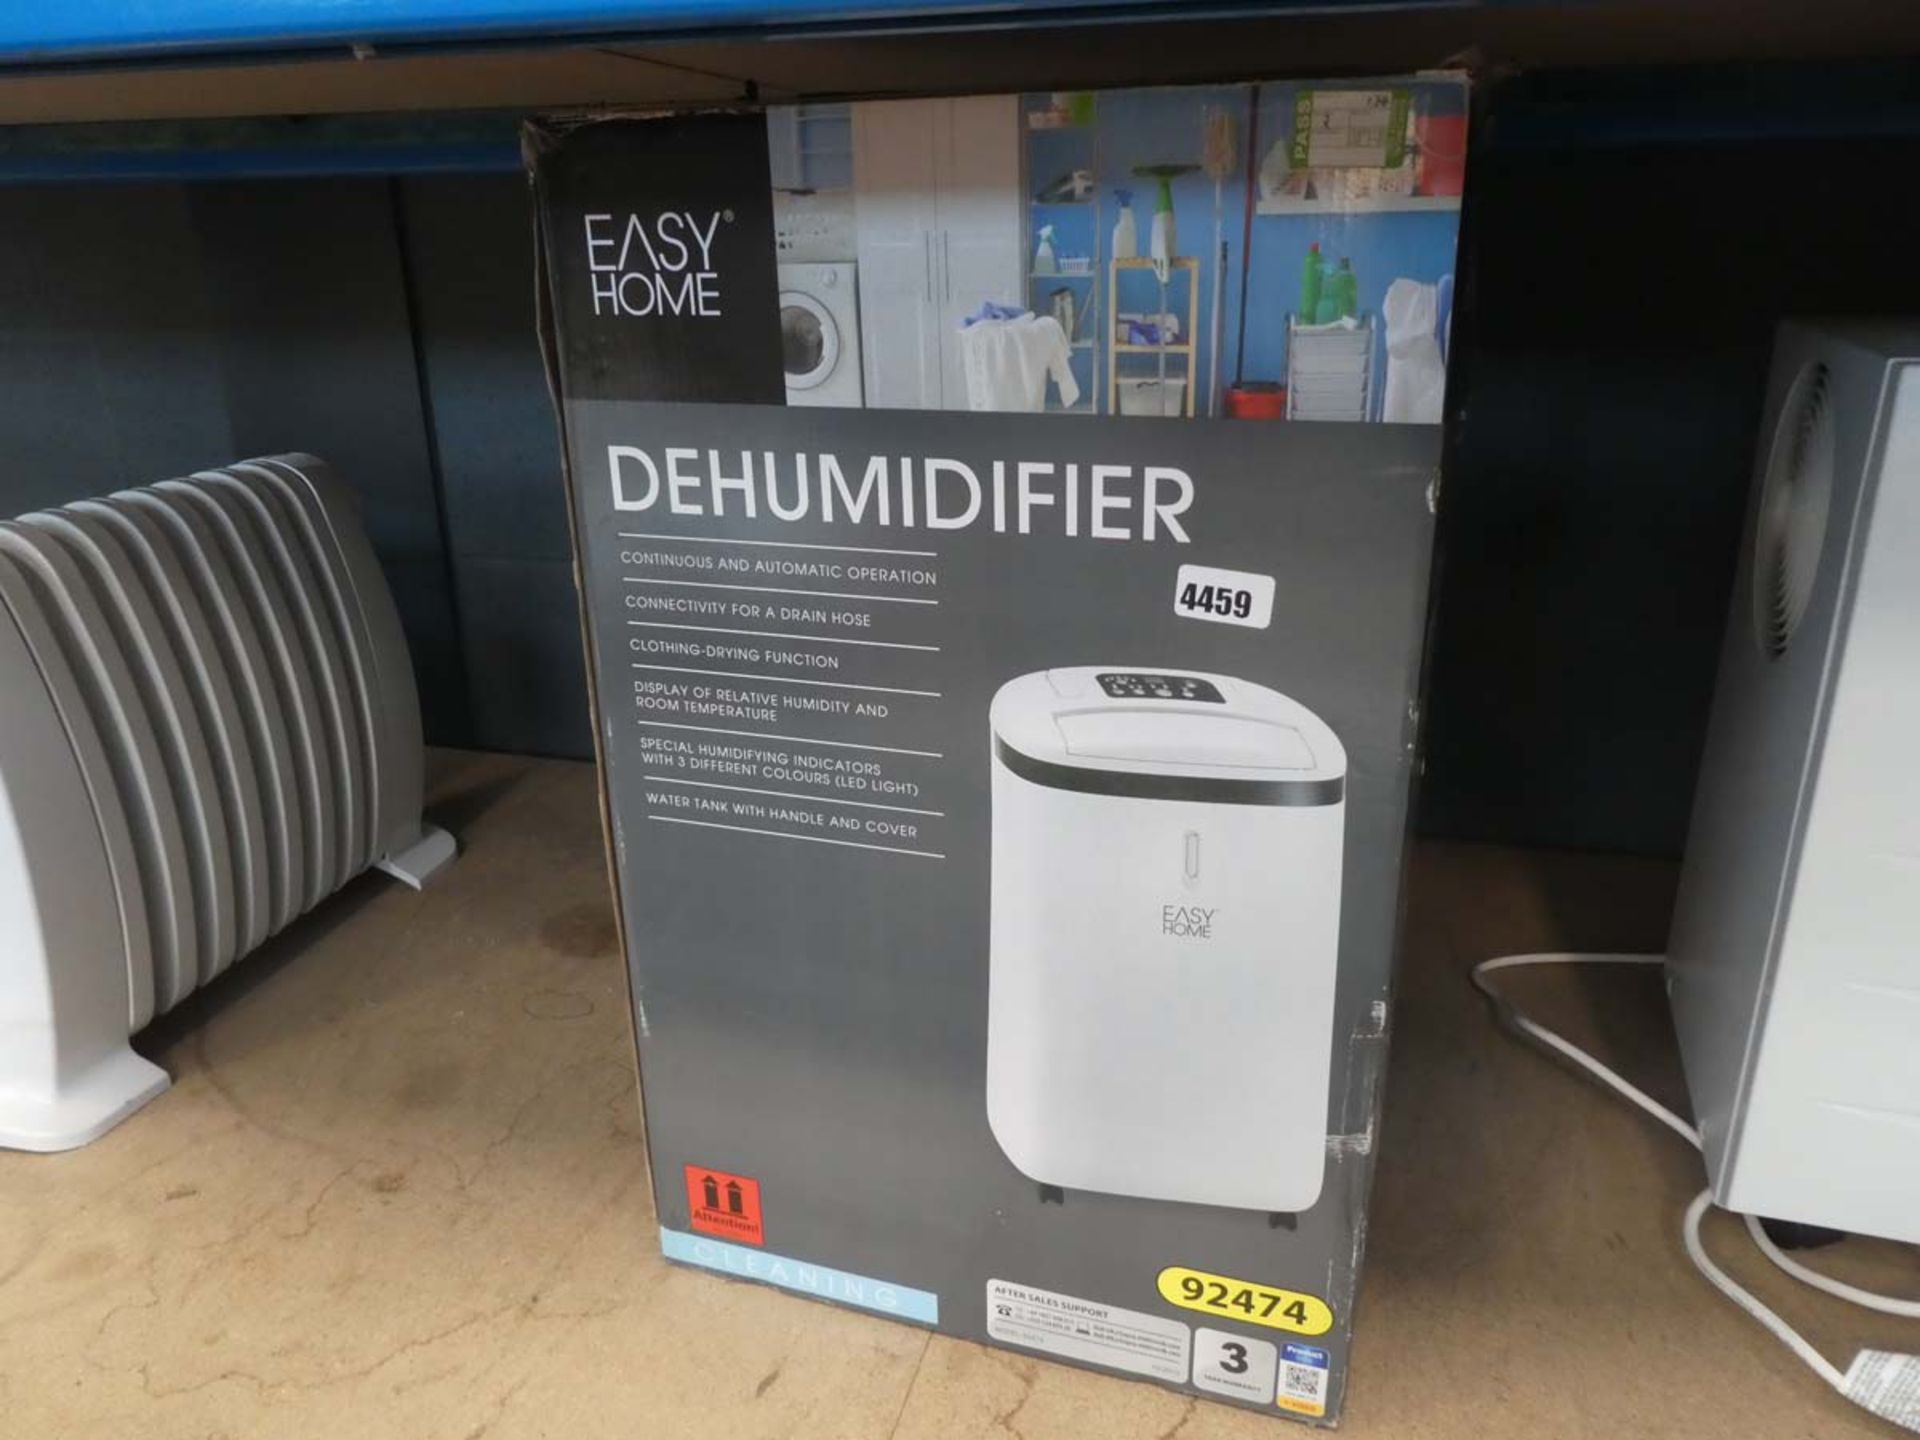 Boxed dehumidifier